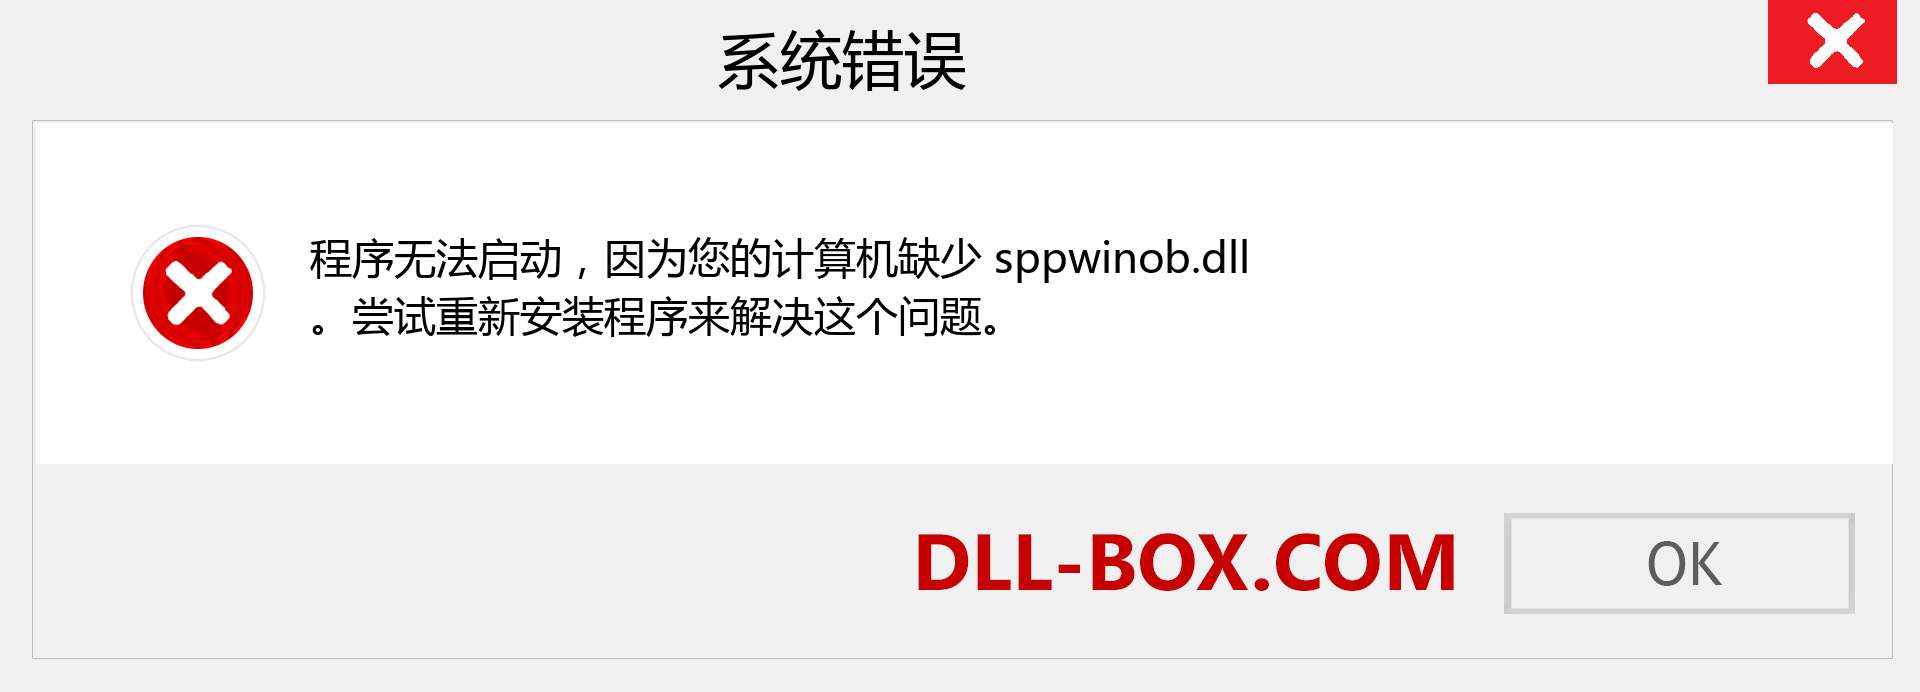 sppwinob.dll 文件丢失？。 适用于 Windows 7、8、10 的下载 - 修复 Windows、照片、图像上的 sppwinob dll 丢失错误